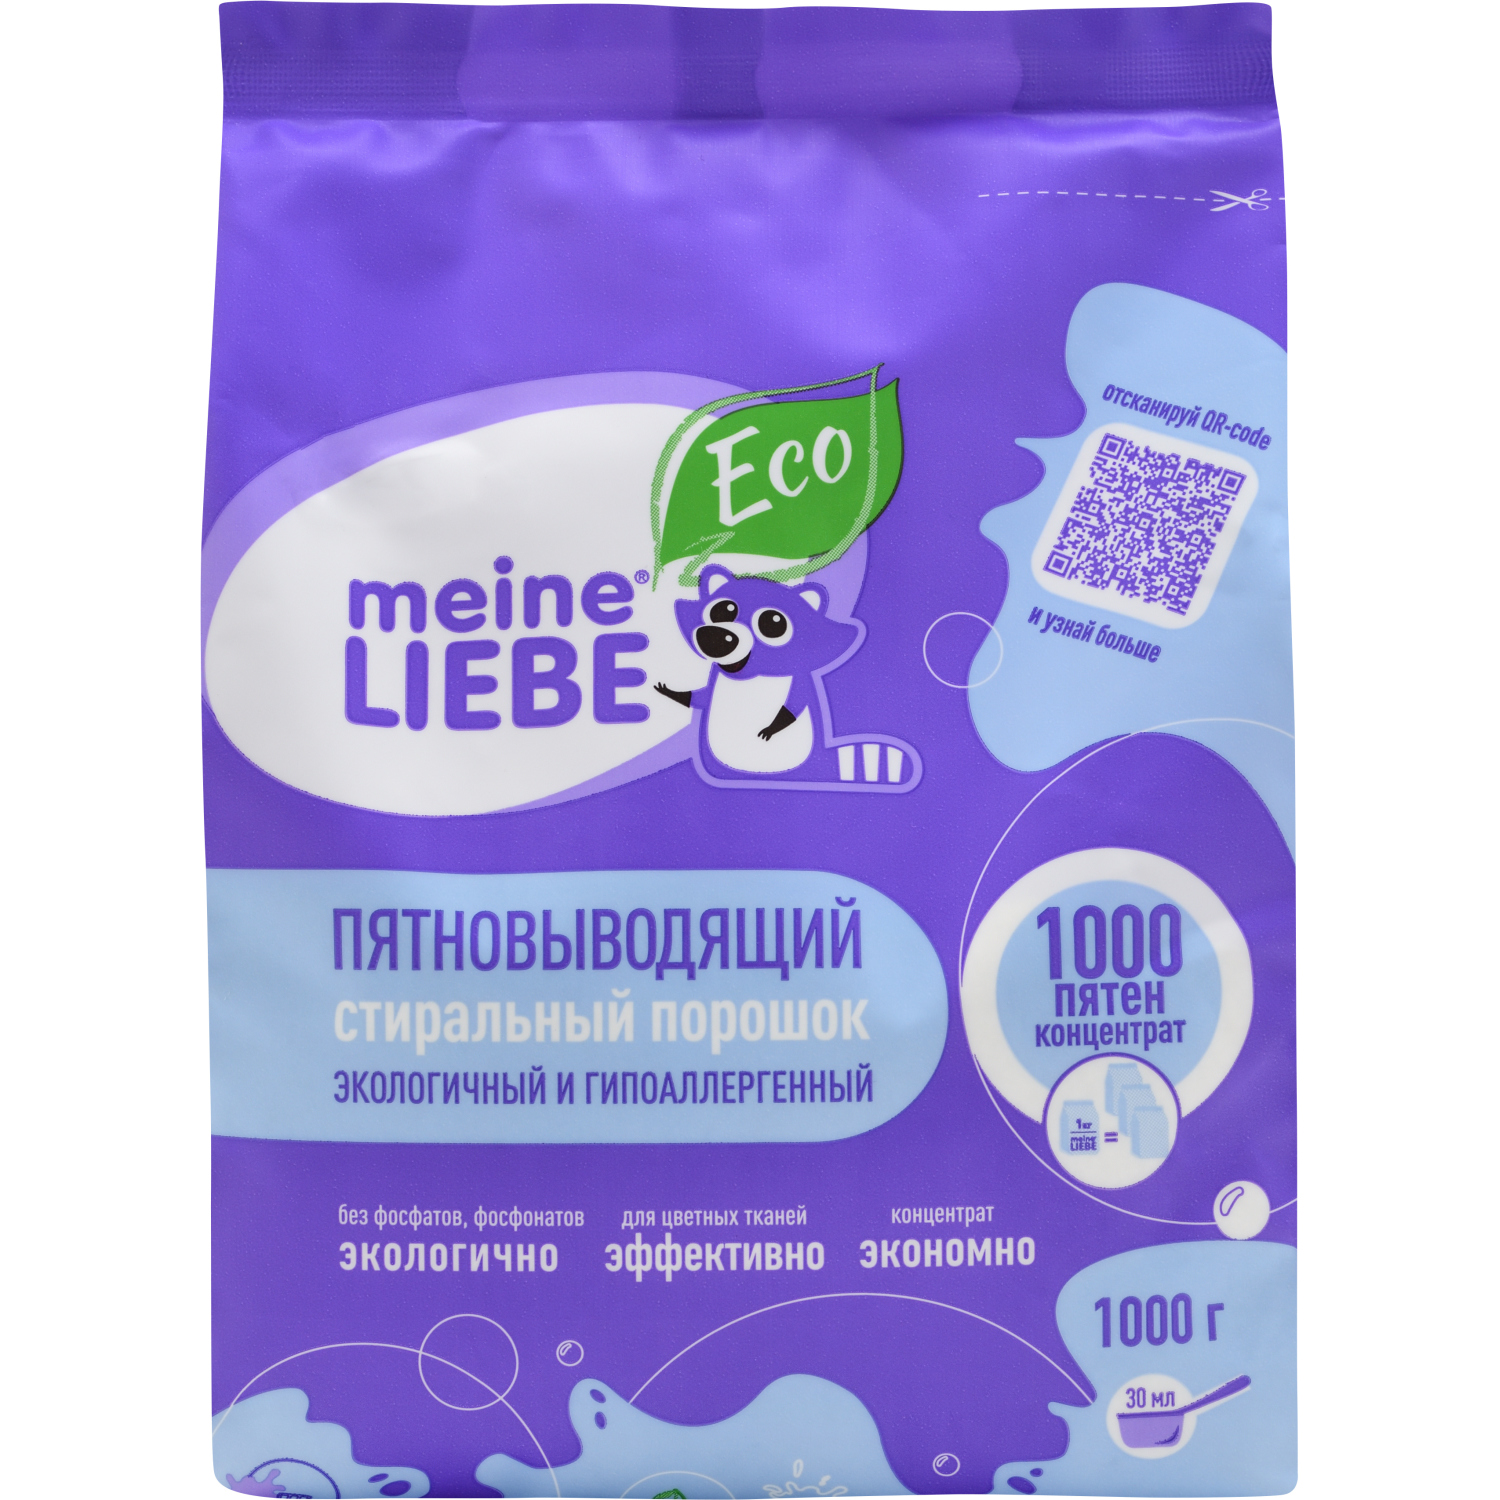 Экологичный гипоаллергенный стиральный порошок Meine Liebe 1000 пятен, 1 кг